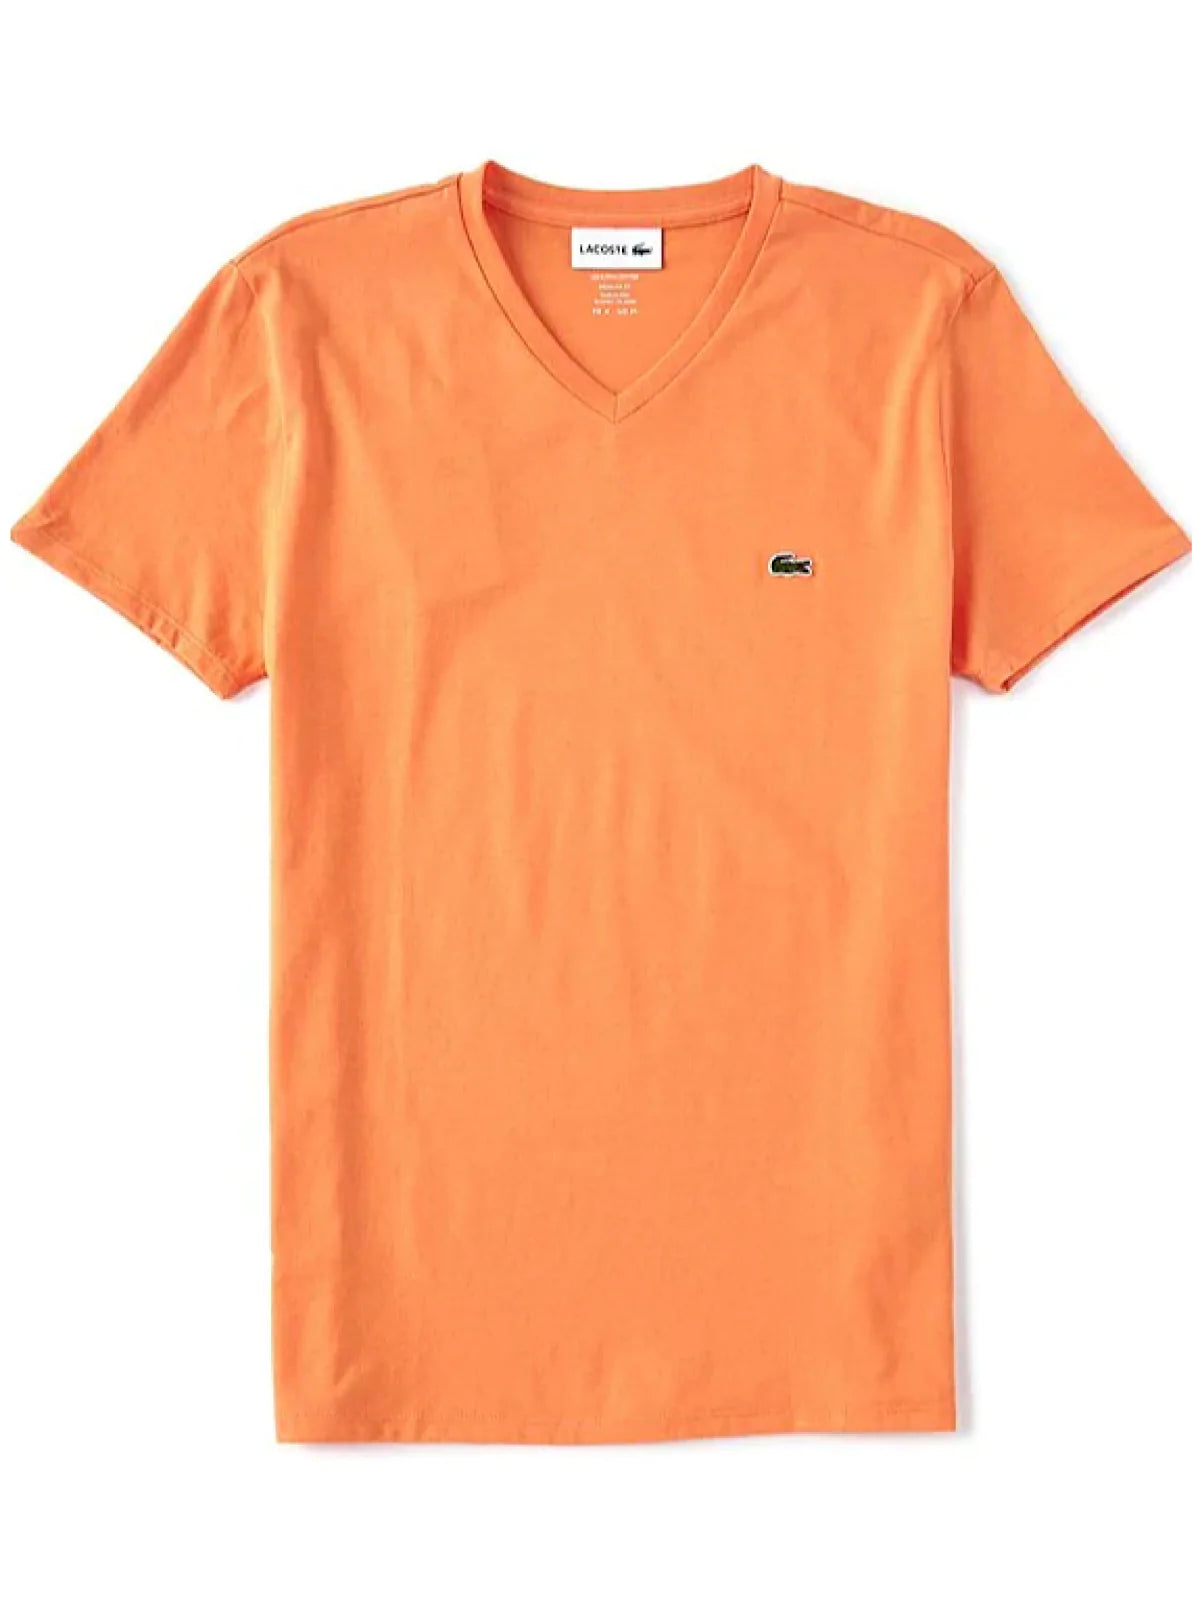 Men's V-neck Pima Cotton Jersey T-shirt - Orange NPB